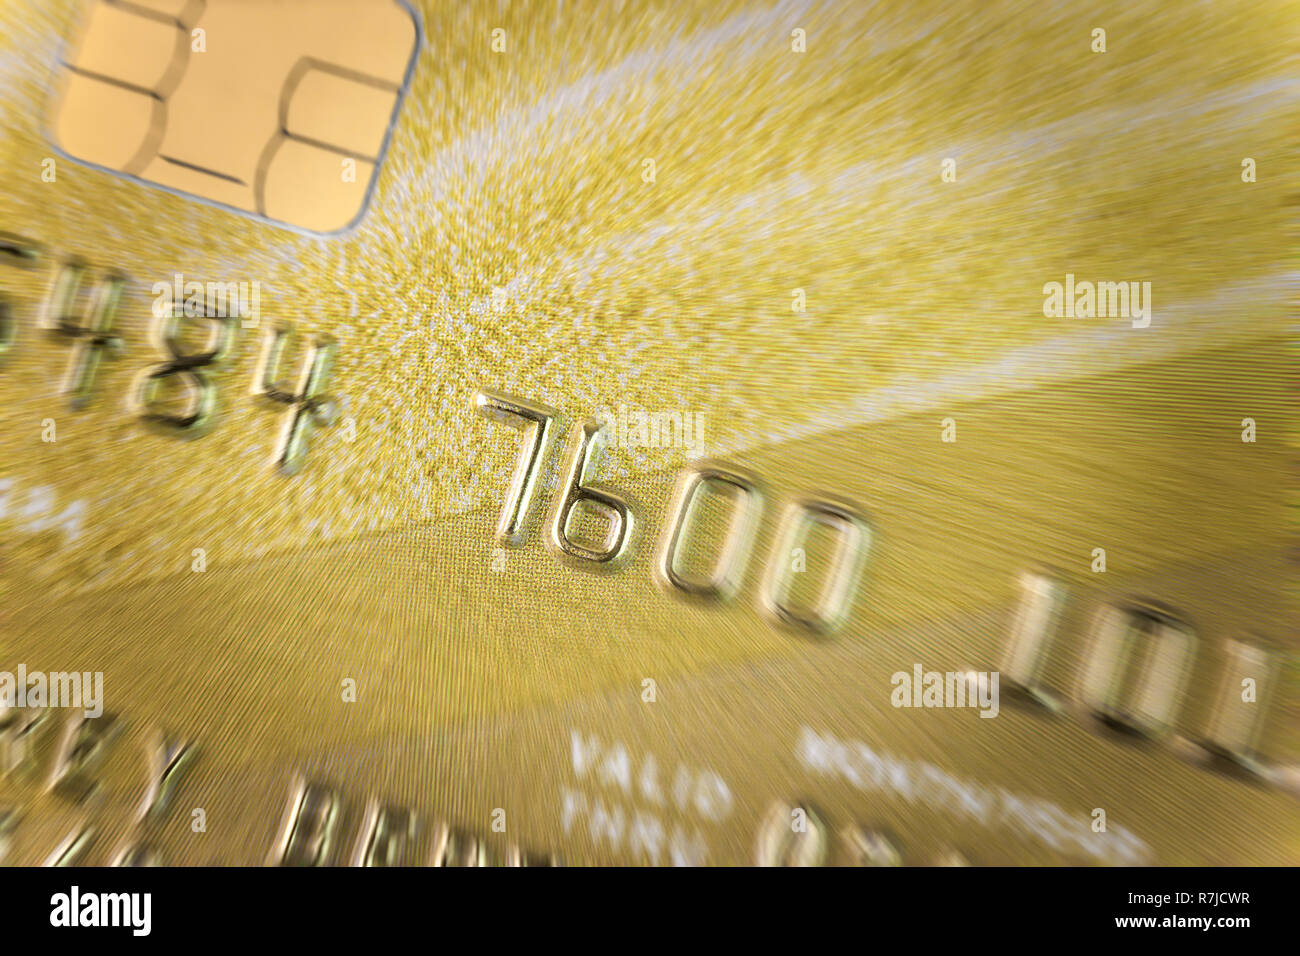 Fragment d'une carte de crédit or avec effet de flou en libre Banque D'Images